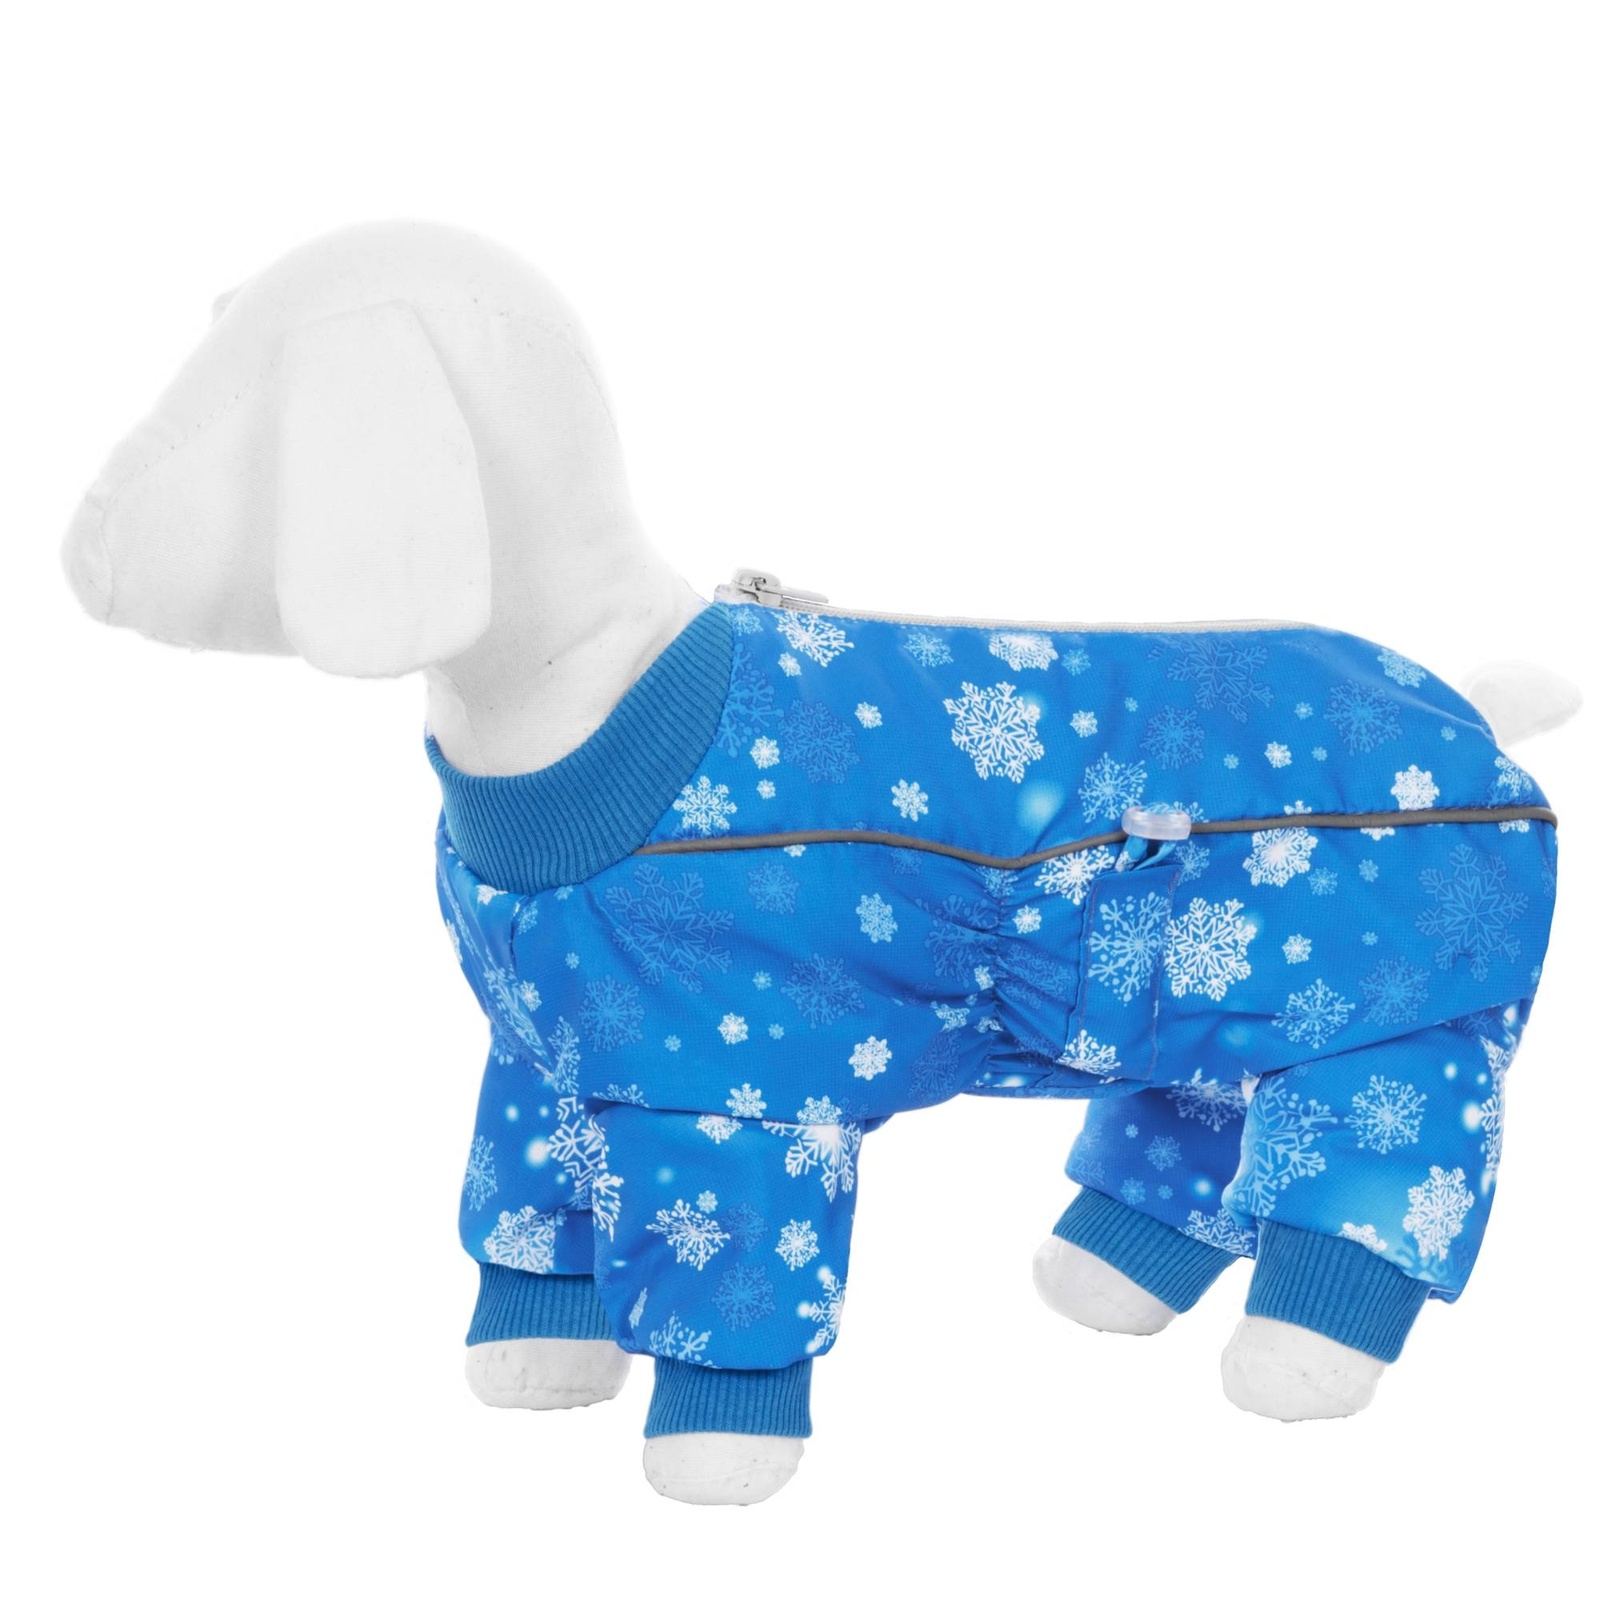 Yami-Yami одежда Yami-Yami одежда комбинезон для собак малых пород, на меху с рисунком снежинки (L) yami yami одежда yami yami одежда комбинезон для собак малых пород на меху с рисунком снежинки s